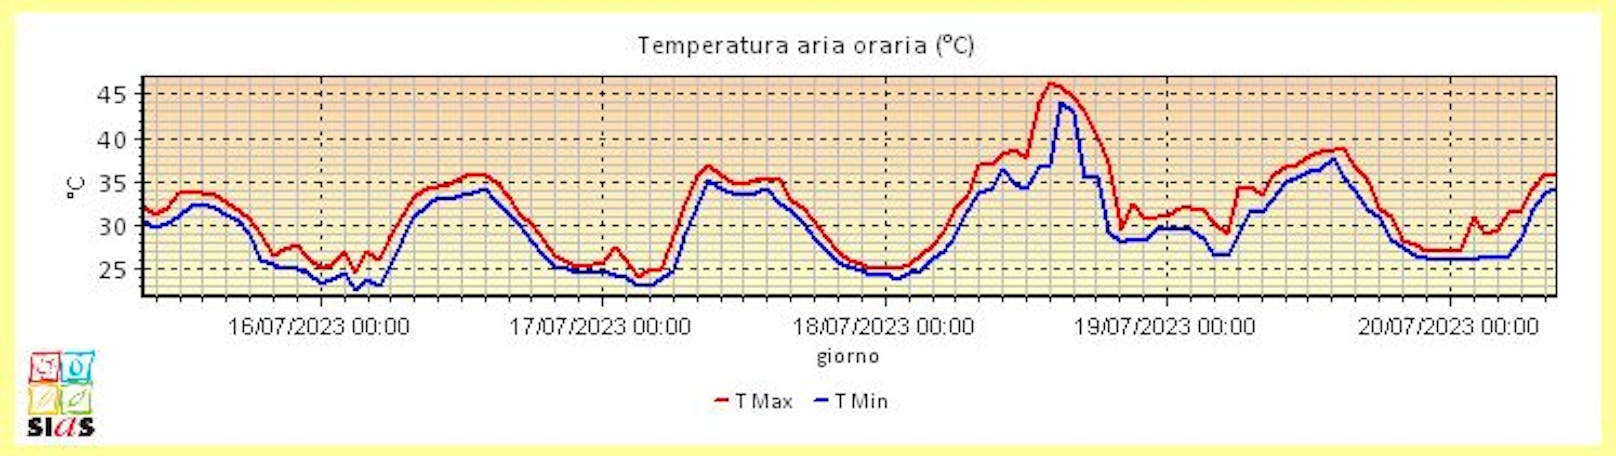 In Licata im Süden Siziliens wurde ein neuer Höchstwert von 46,3 Grad erreicht.